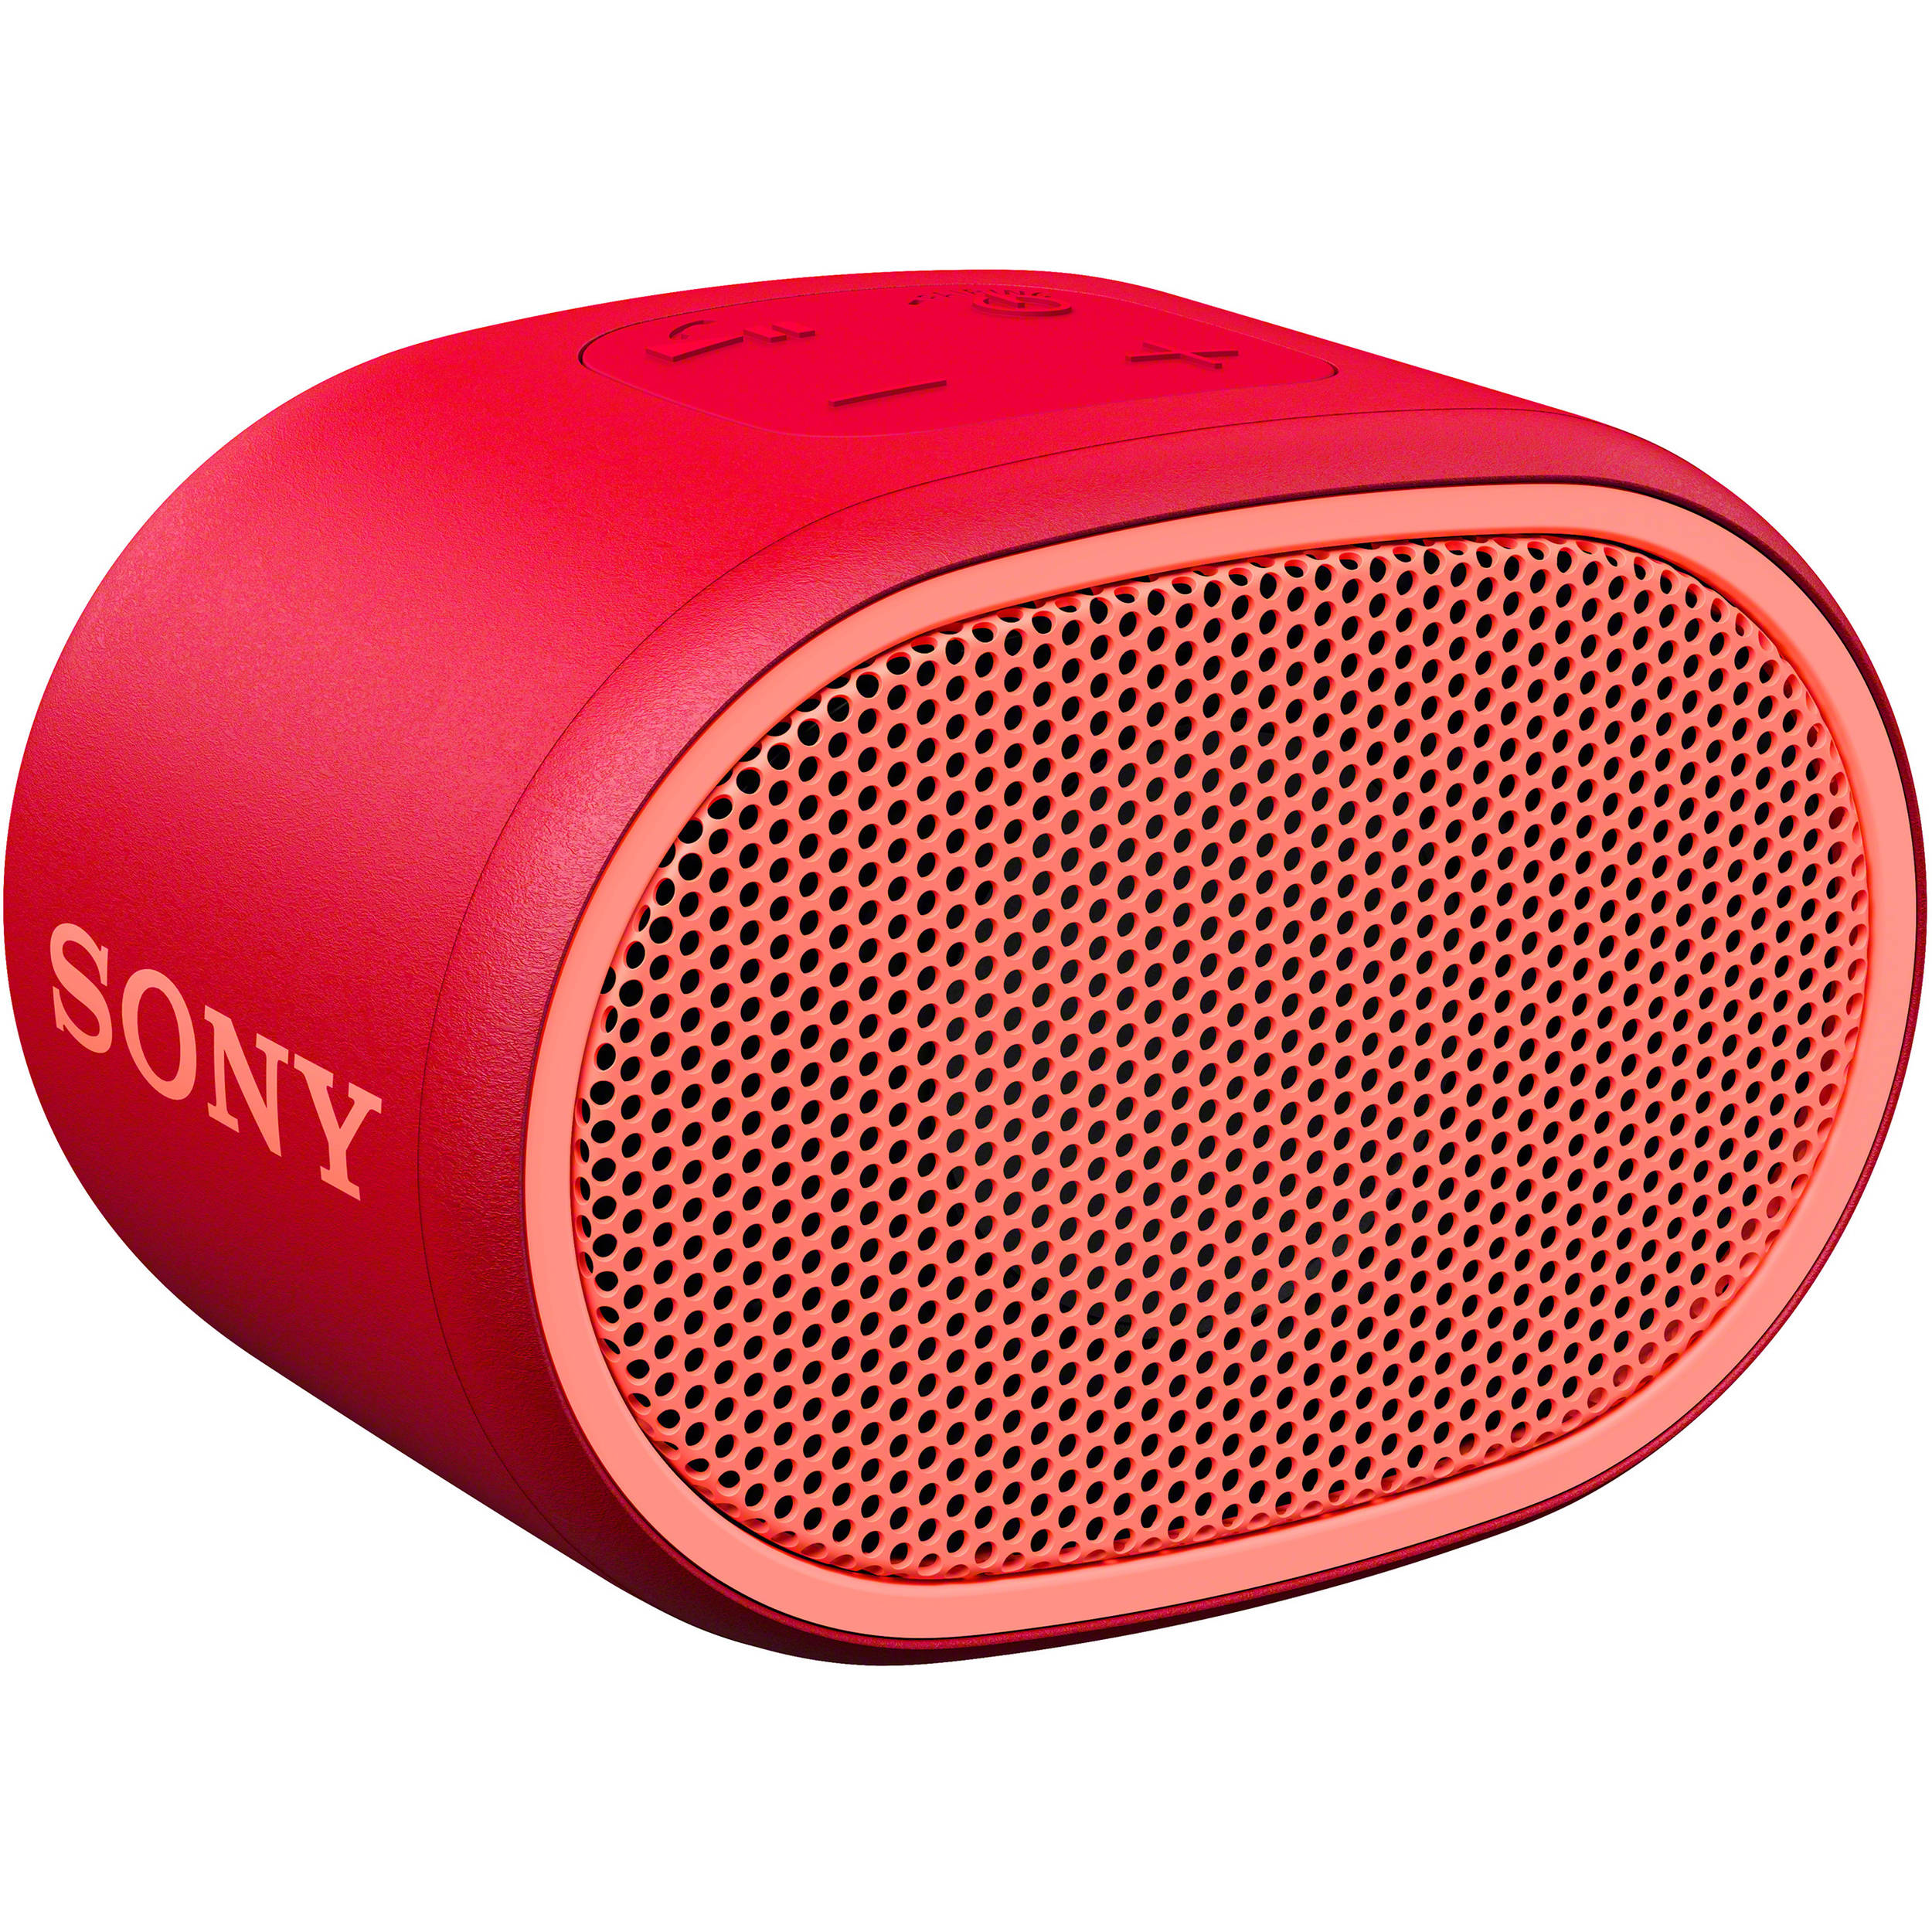 sony splashproof bluetooth wireless speaker